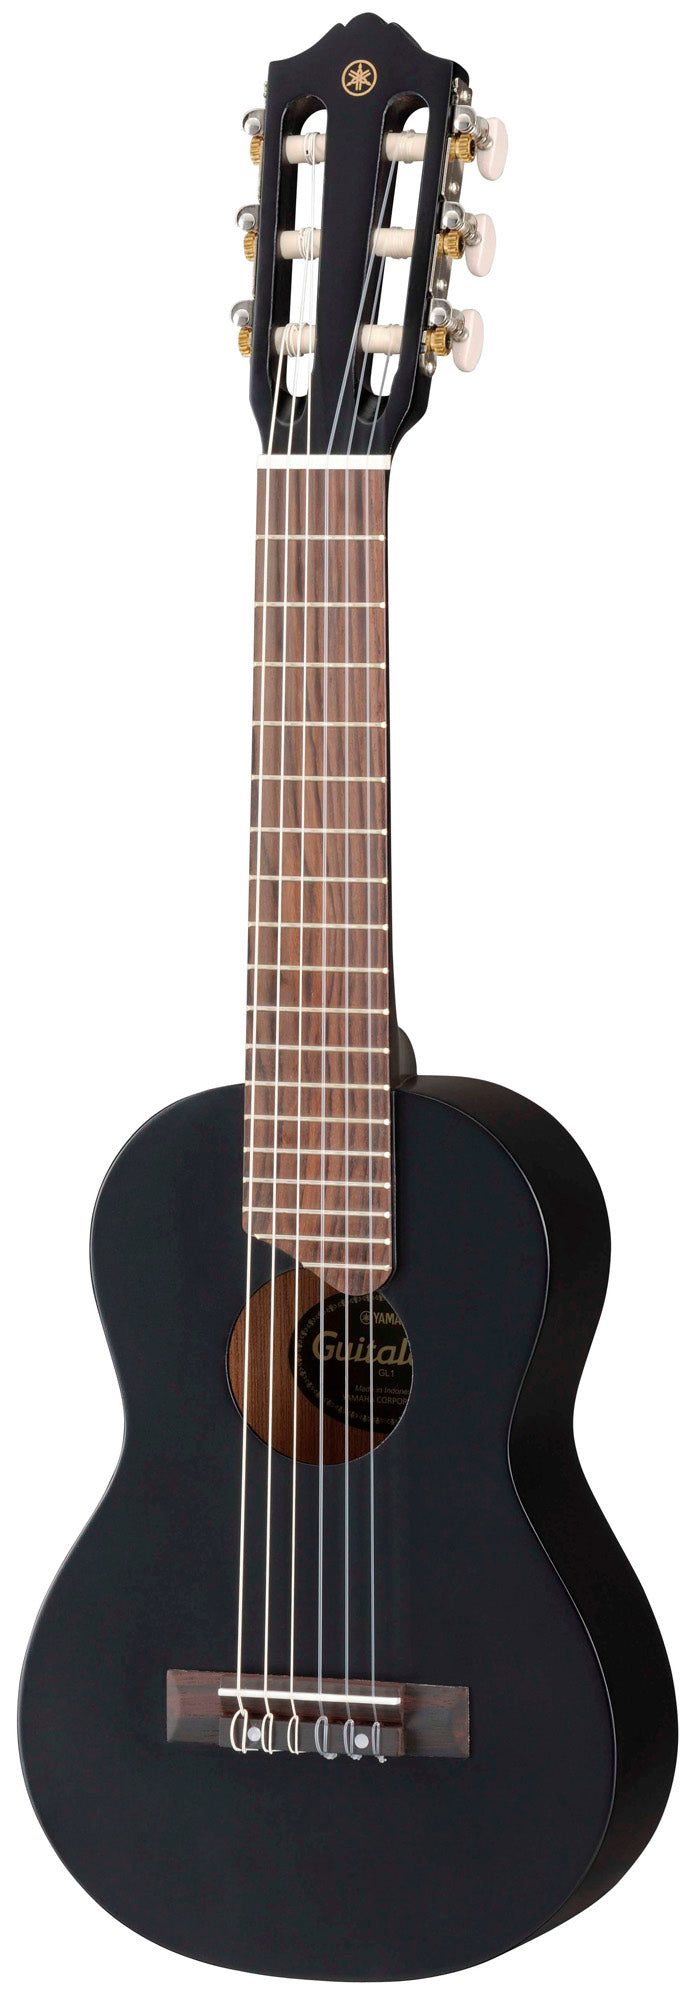 Yamaha GL1 Guitalele (Micro Guitar) with Gig Bag